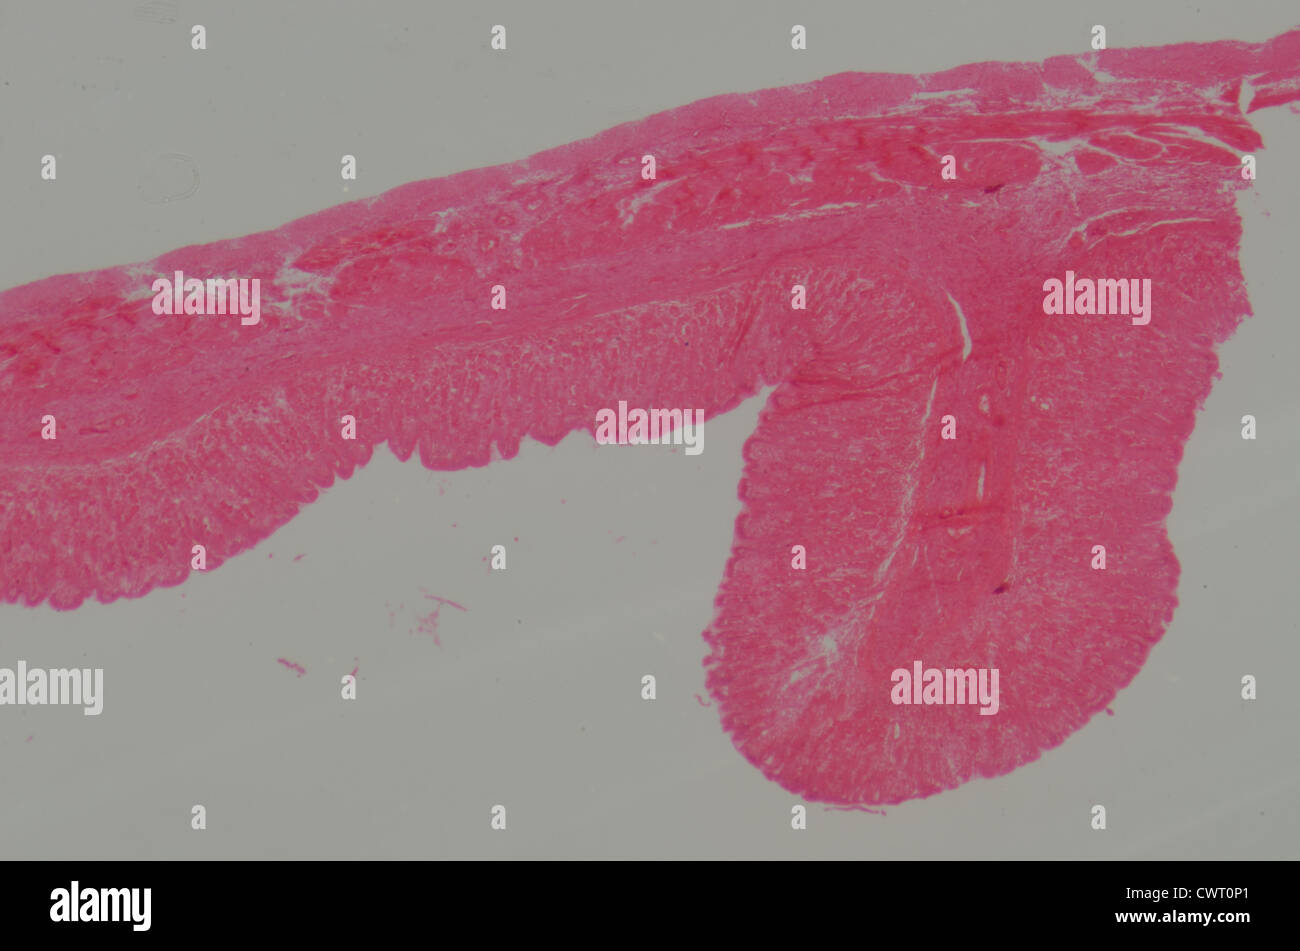 Medical science anthropotomy article microscopique de la physiologie des tissus de l'estomac Banque D'Images